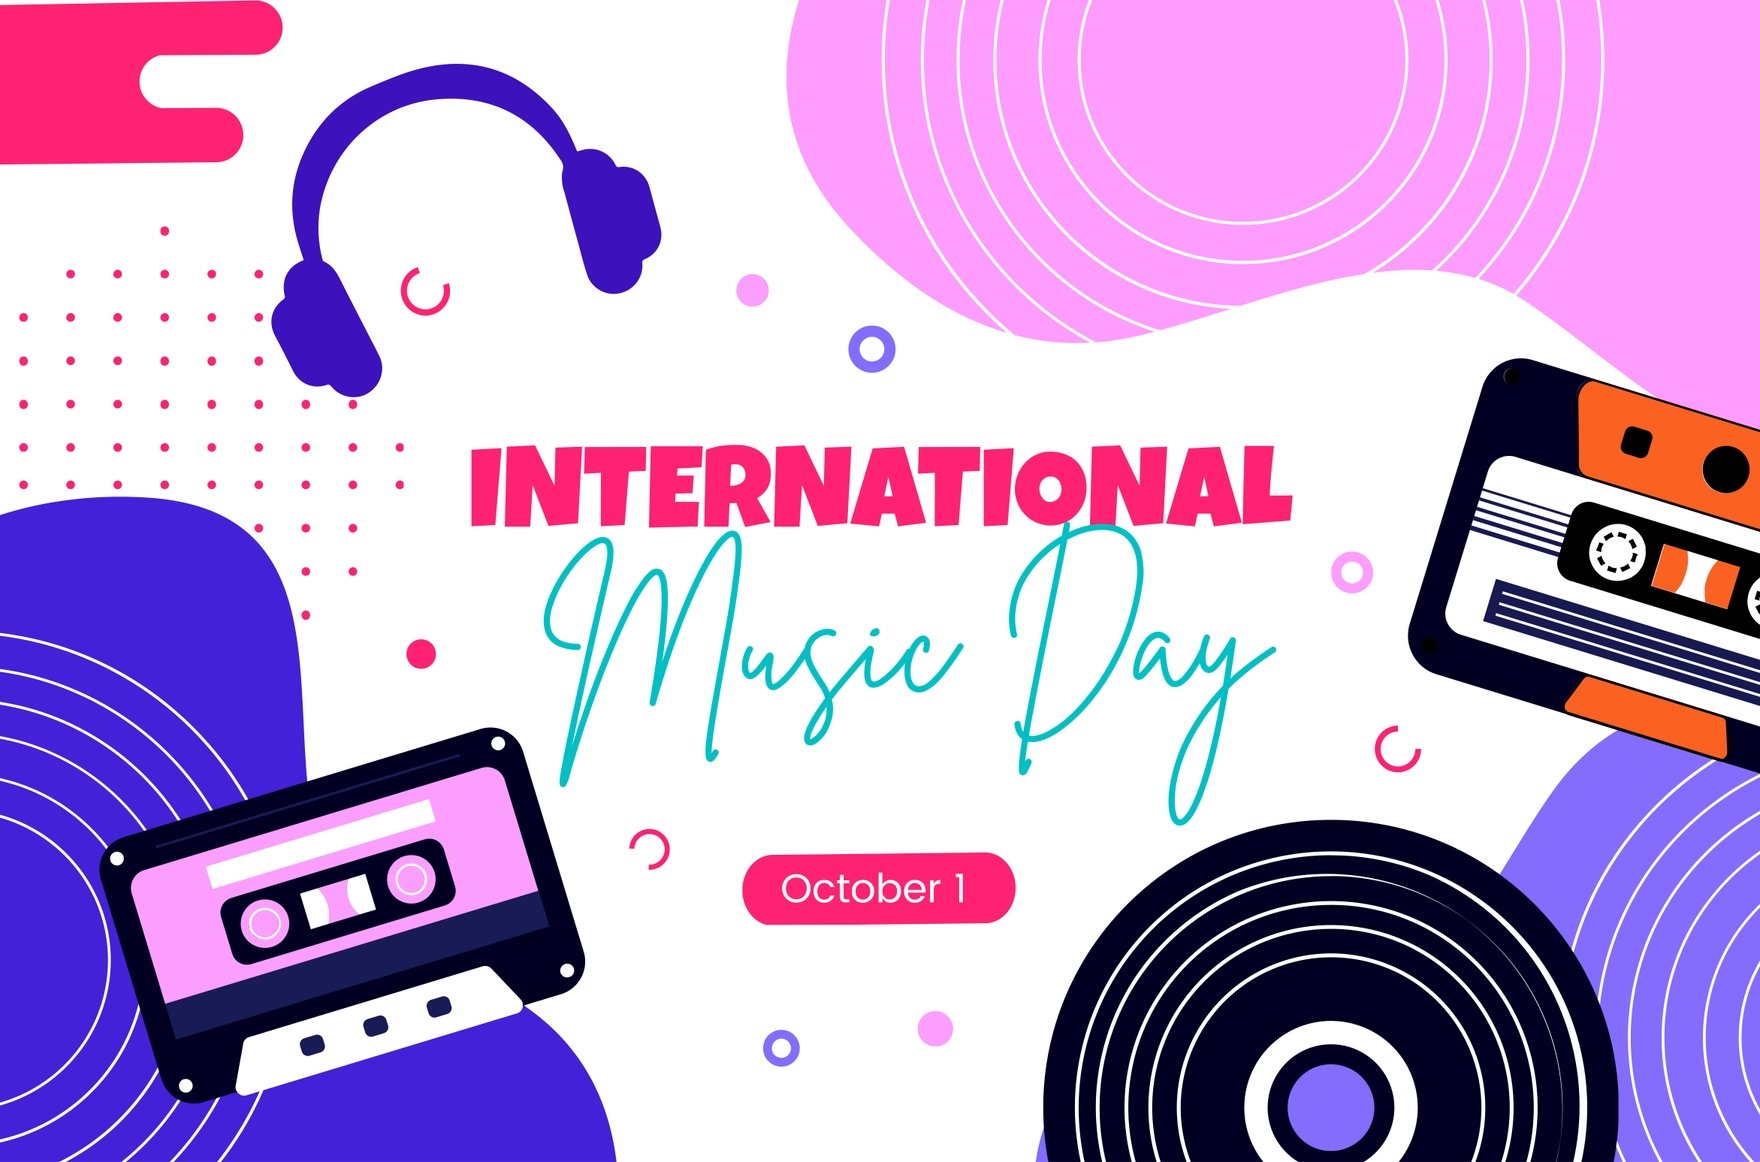 International Music Day Banner in Illustrator, PSD, EPS, SVG, JPG, PNG